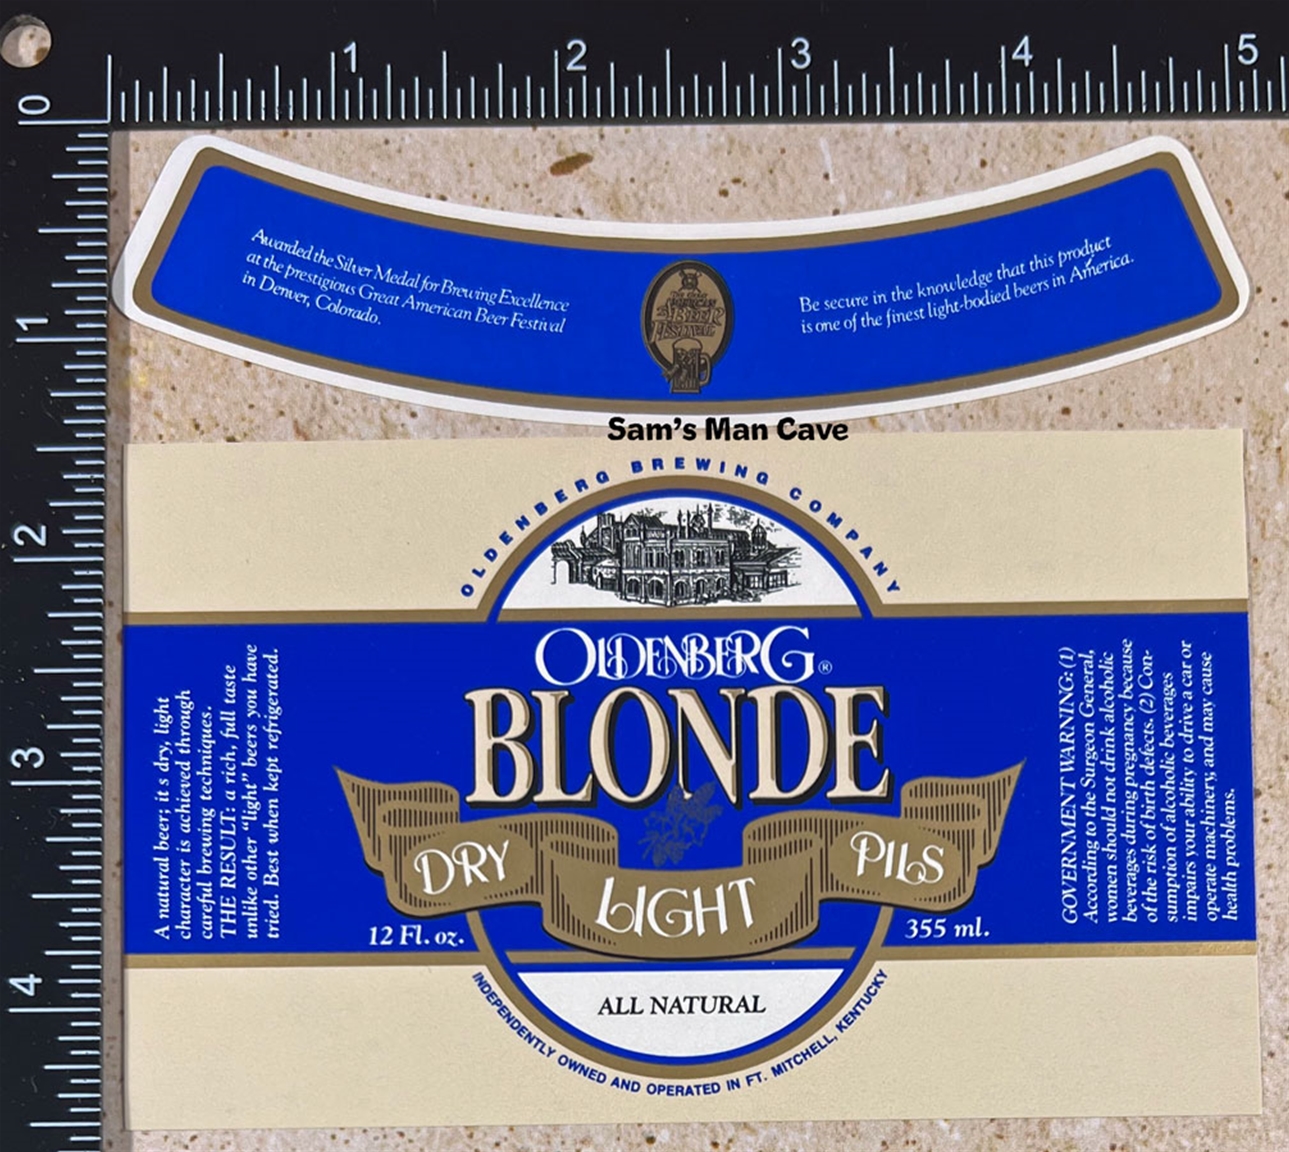 Oldenberg Blonde Dry Light Pils Label with neck